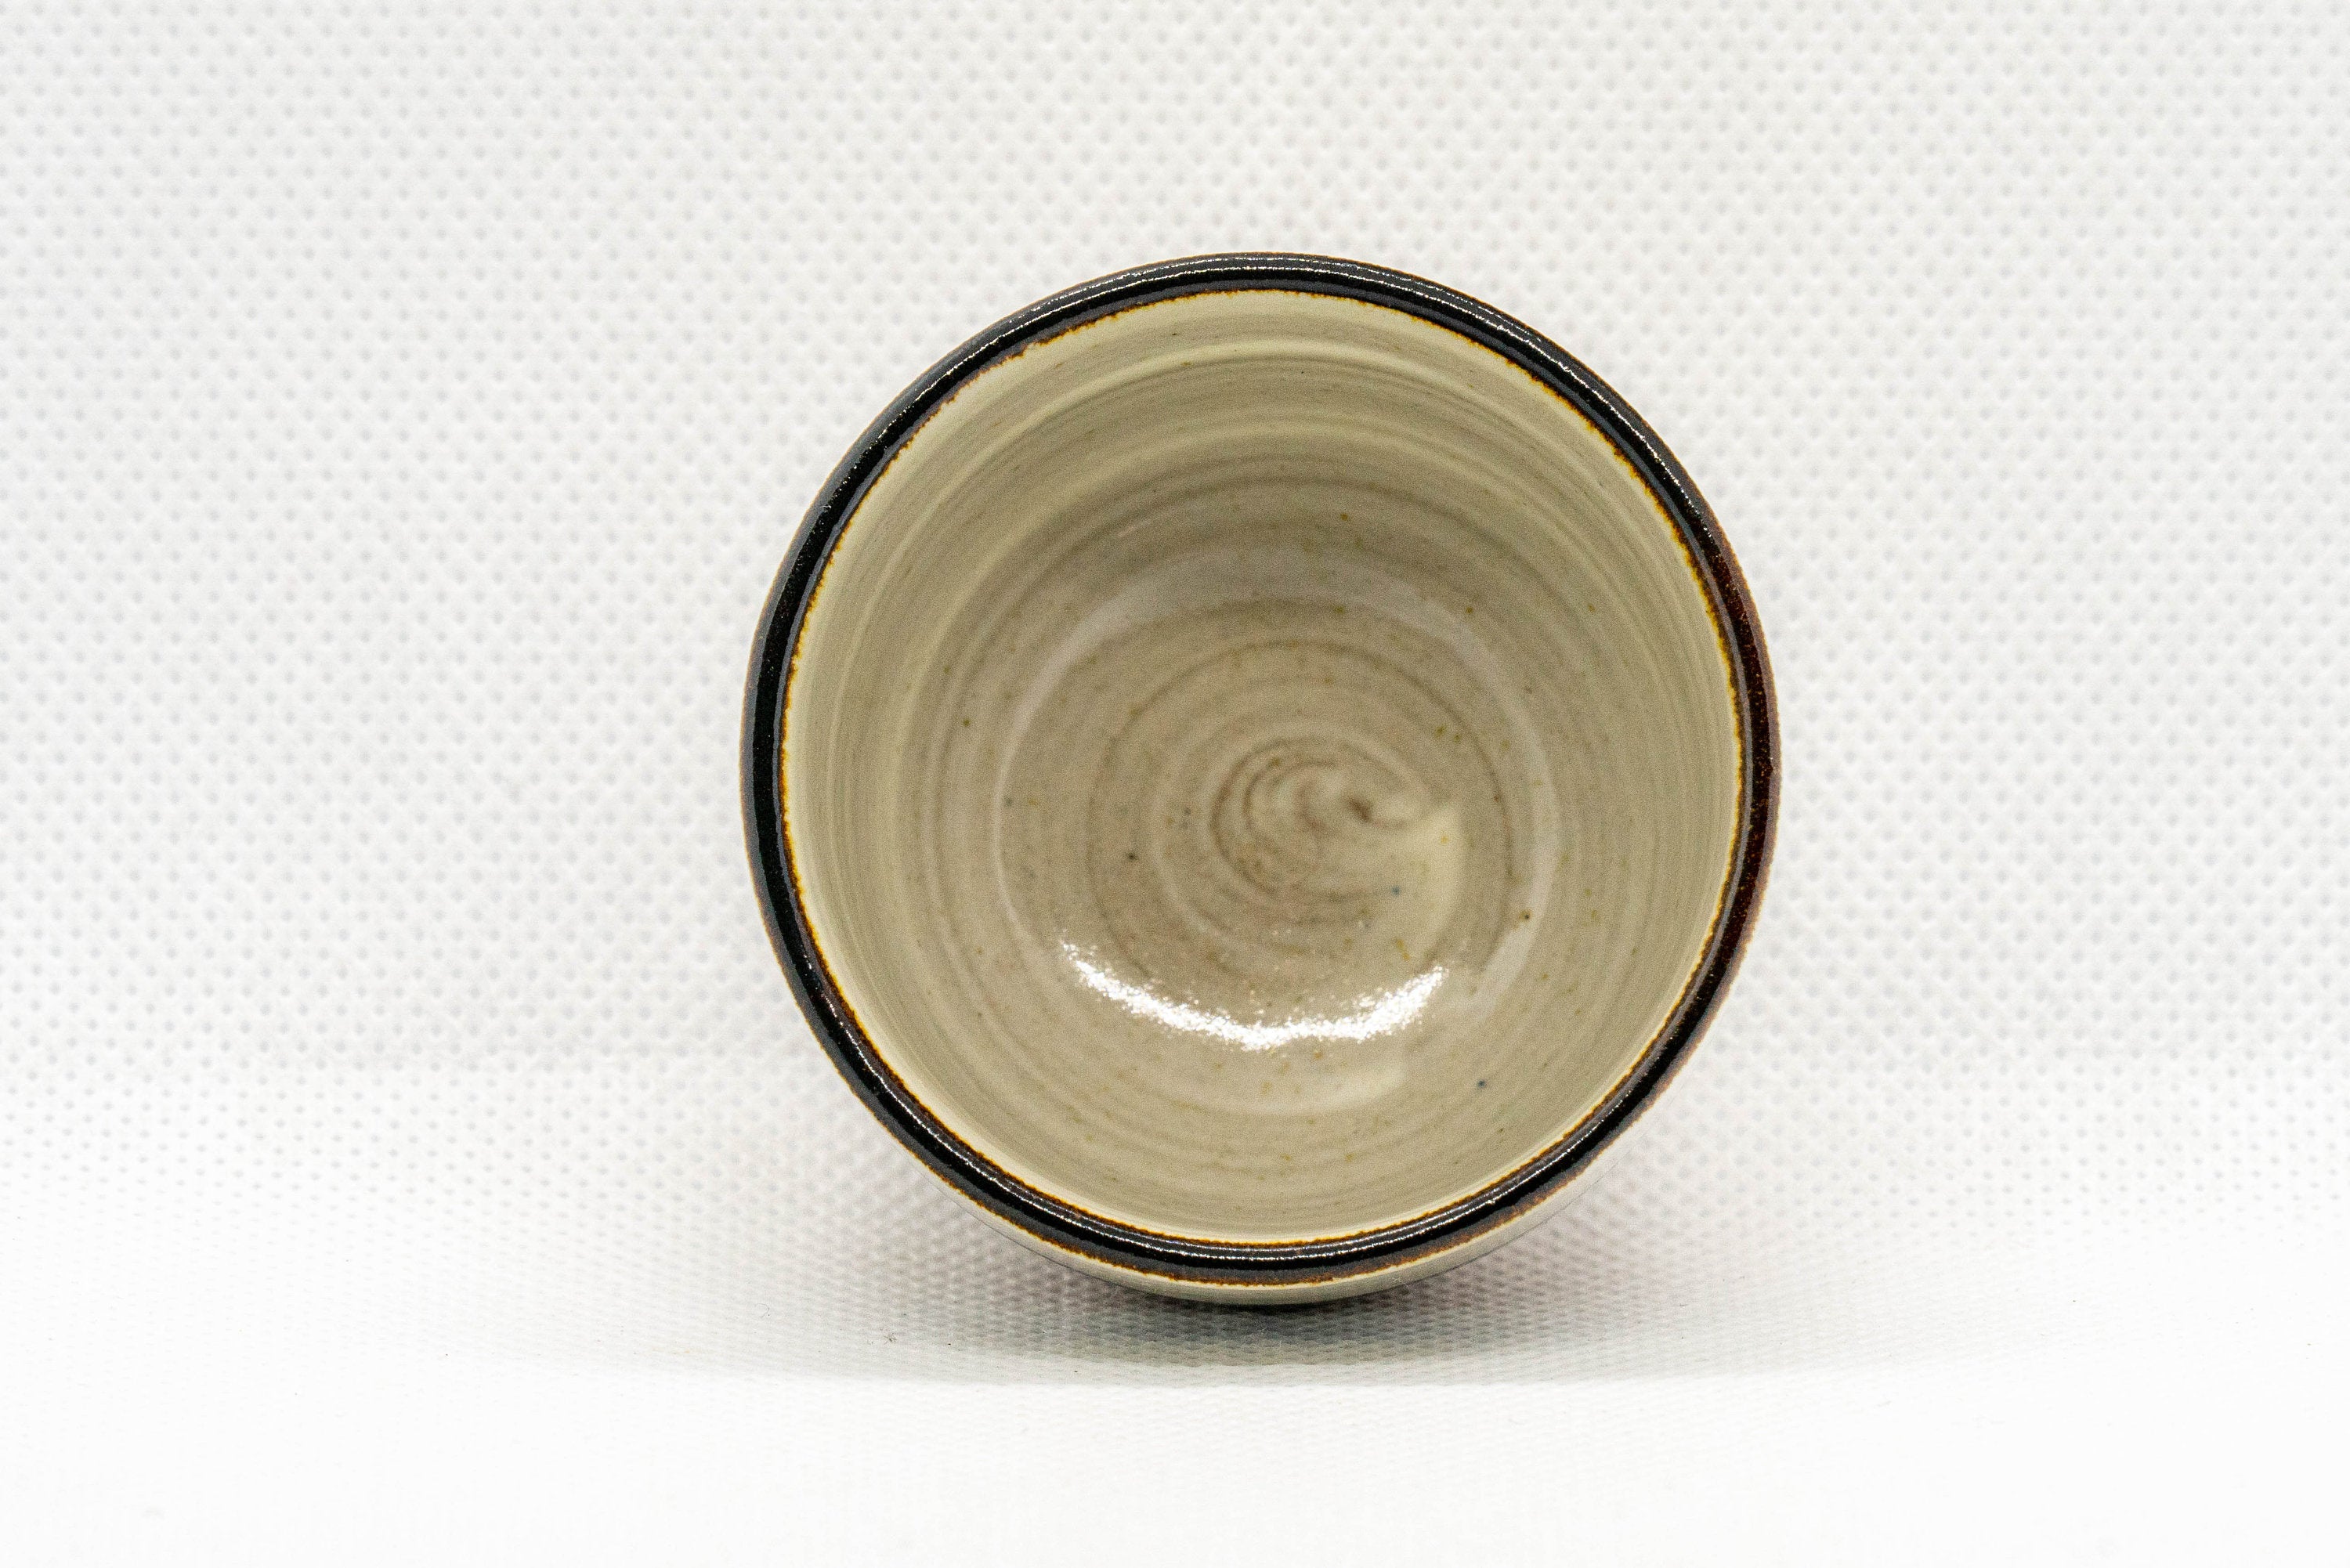 Japanese Teacup - Striped Stoneware Wan-nari Guinomi - 40ml